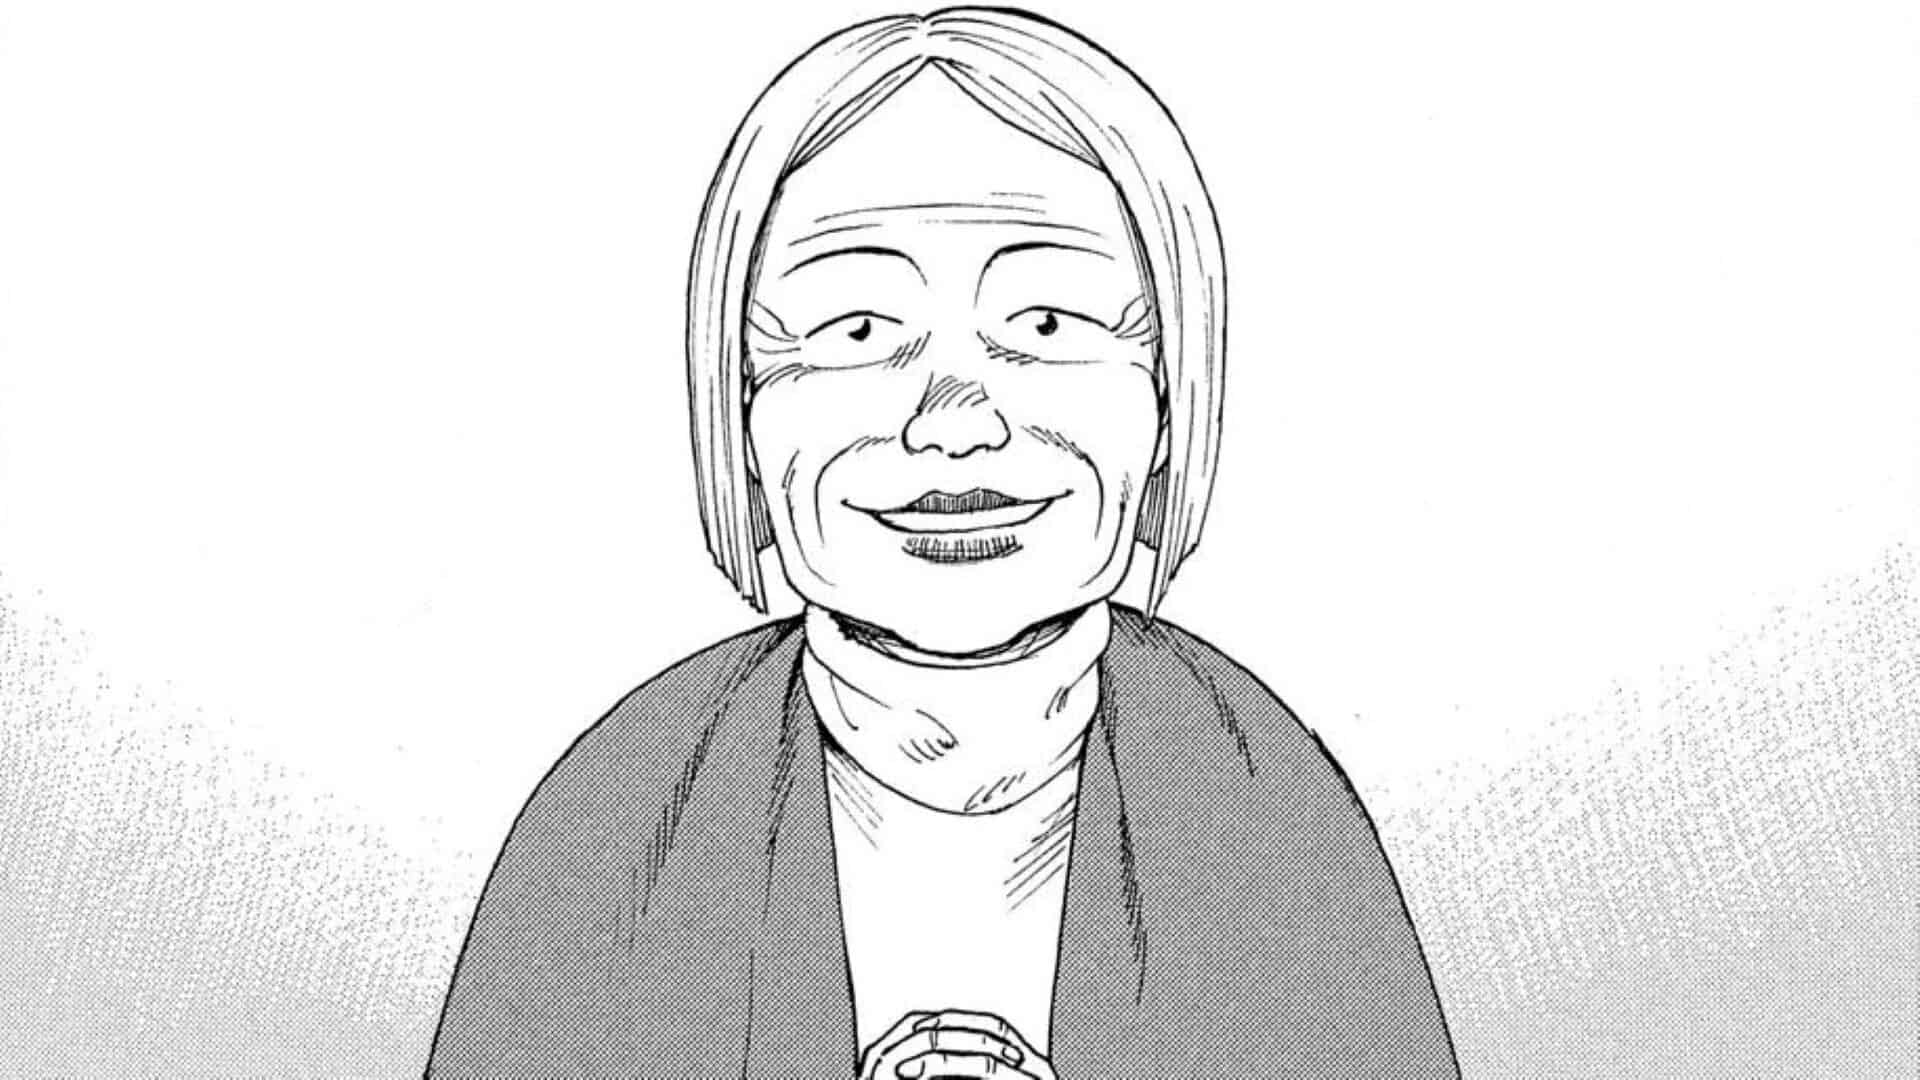 Profesor Shino El director de la guardería - Tengoku Daimakyou Capítulo 1 (Créditos: Comic Days)